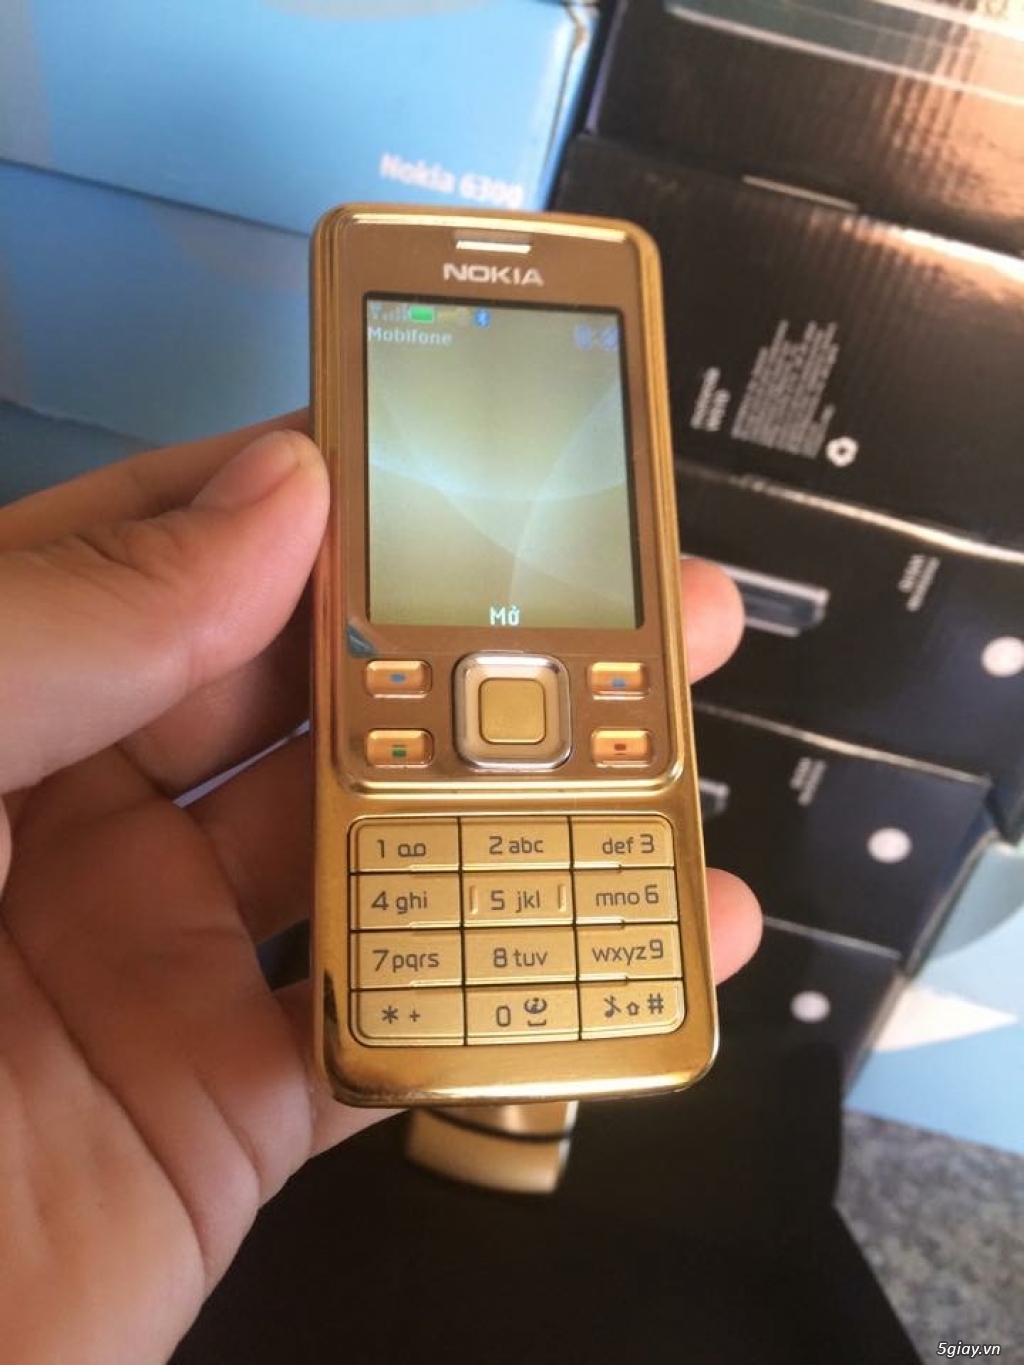 ⚡Điện Thoại Nokia 6300 Gold Sang Trọng - Tuyệt phẩm không bao giờ lỗi thời⚡ ☔BẢO HÀNH 1THÁNG - 1 ĐỔI - 3